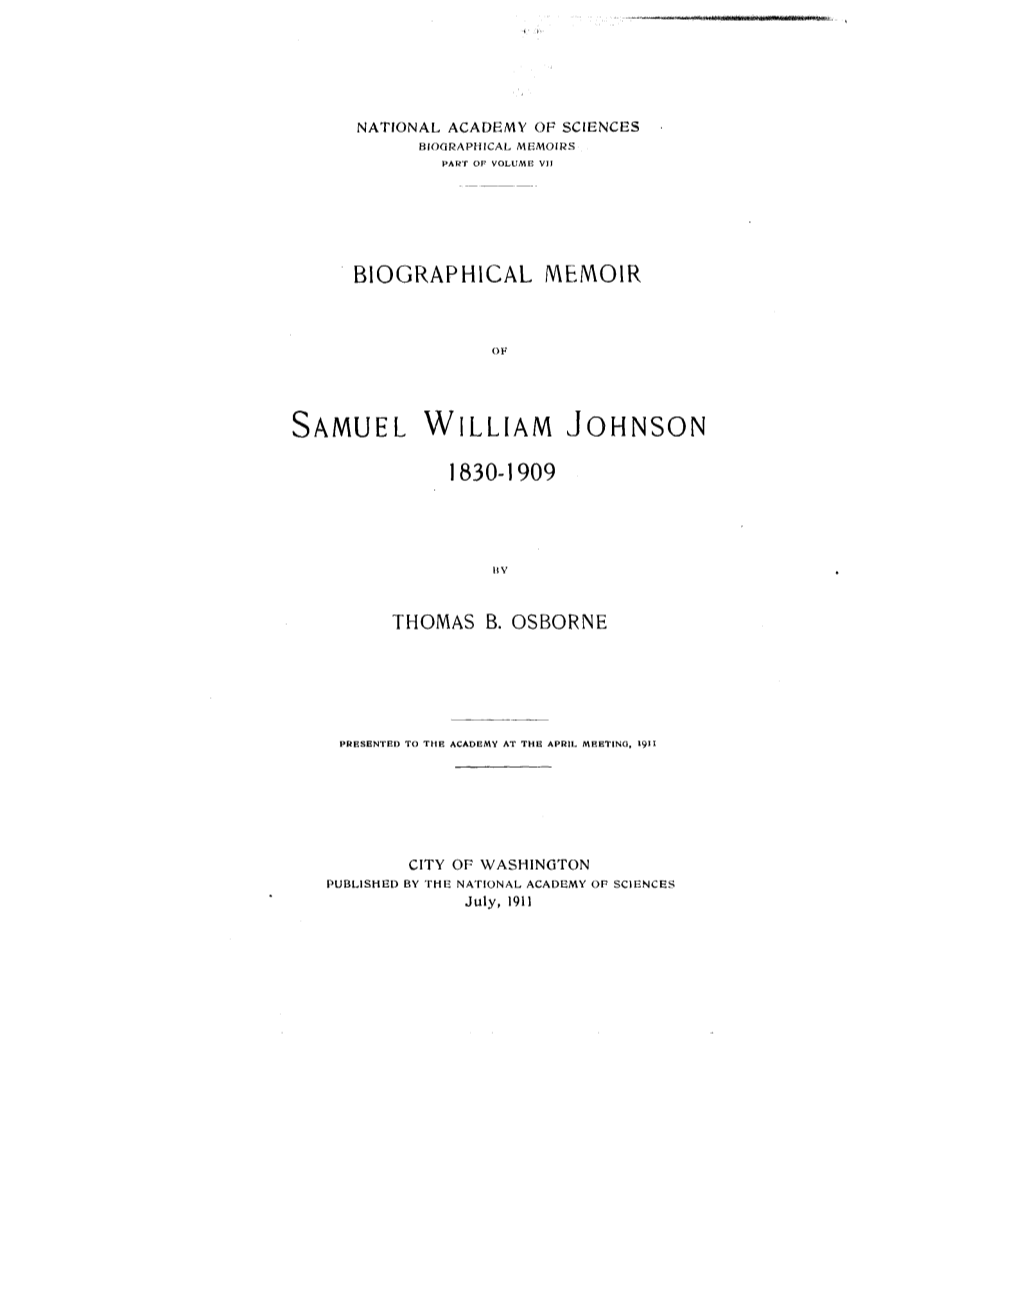 Samuel William Johnson 1830-1909